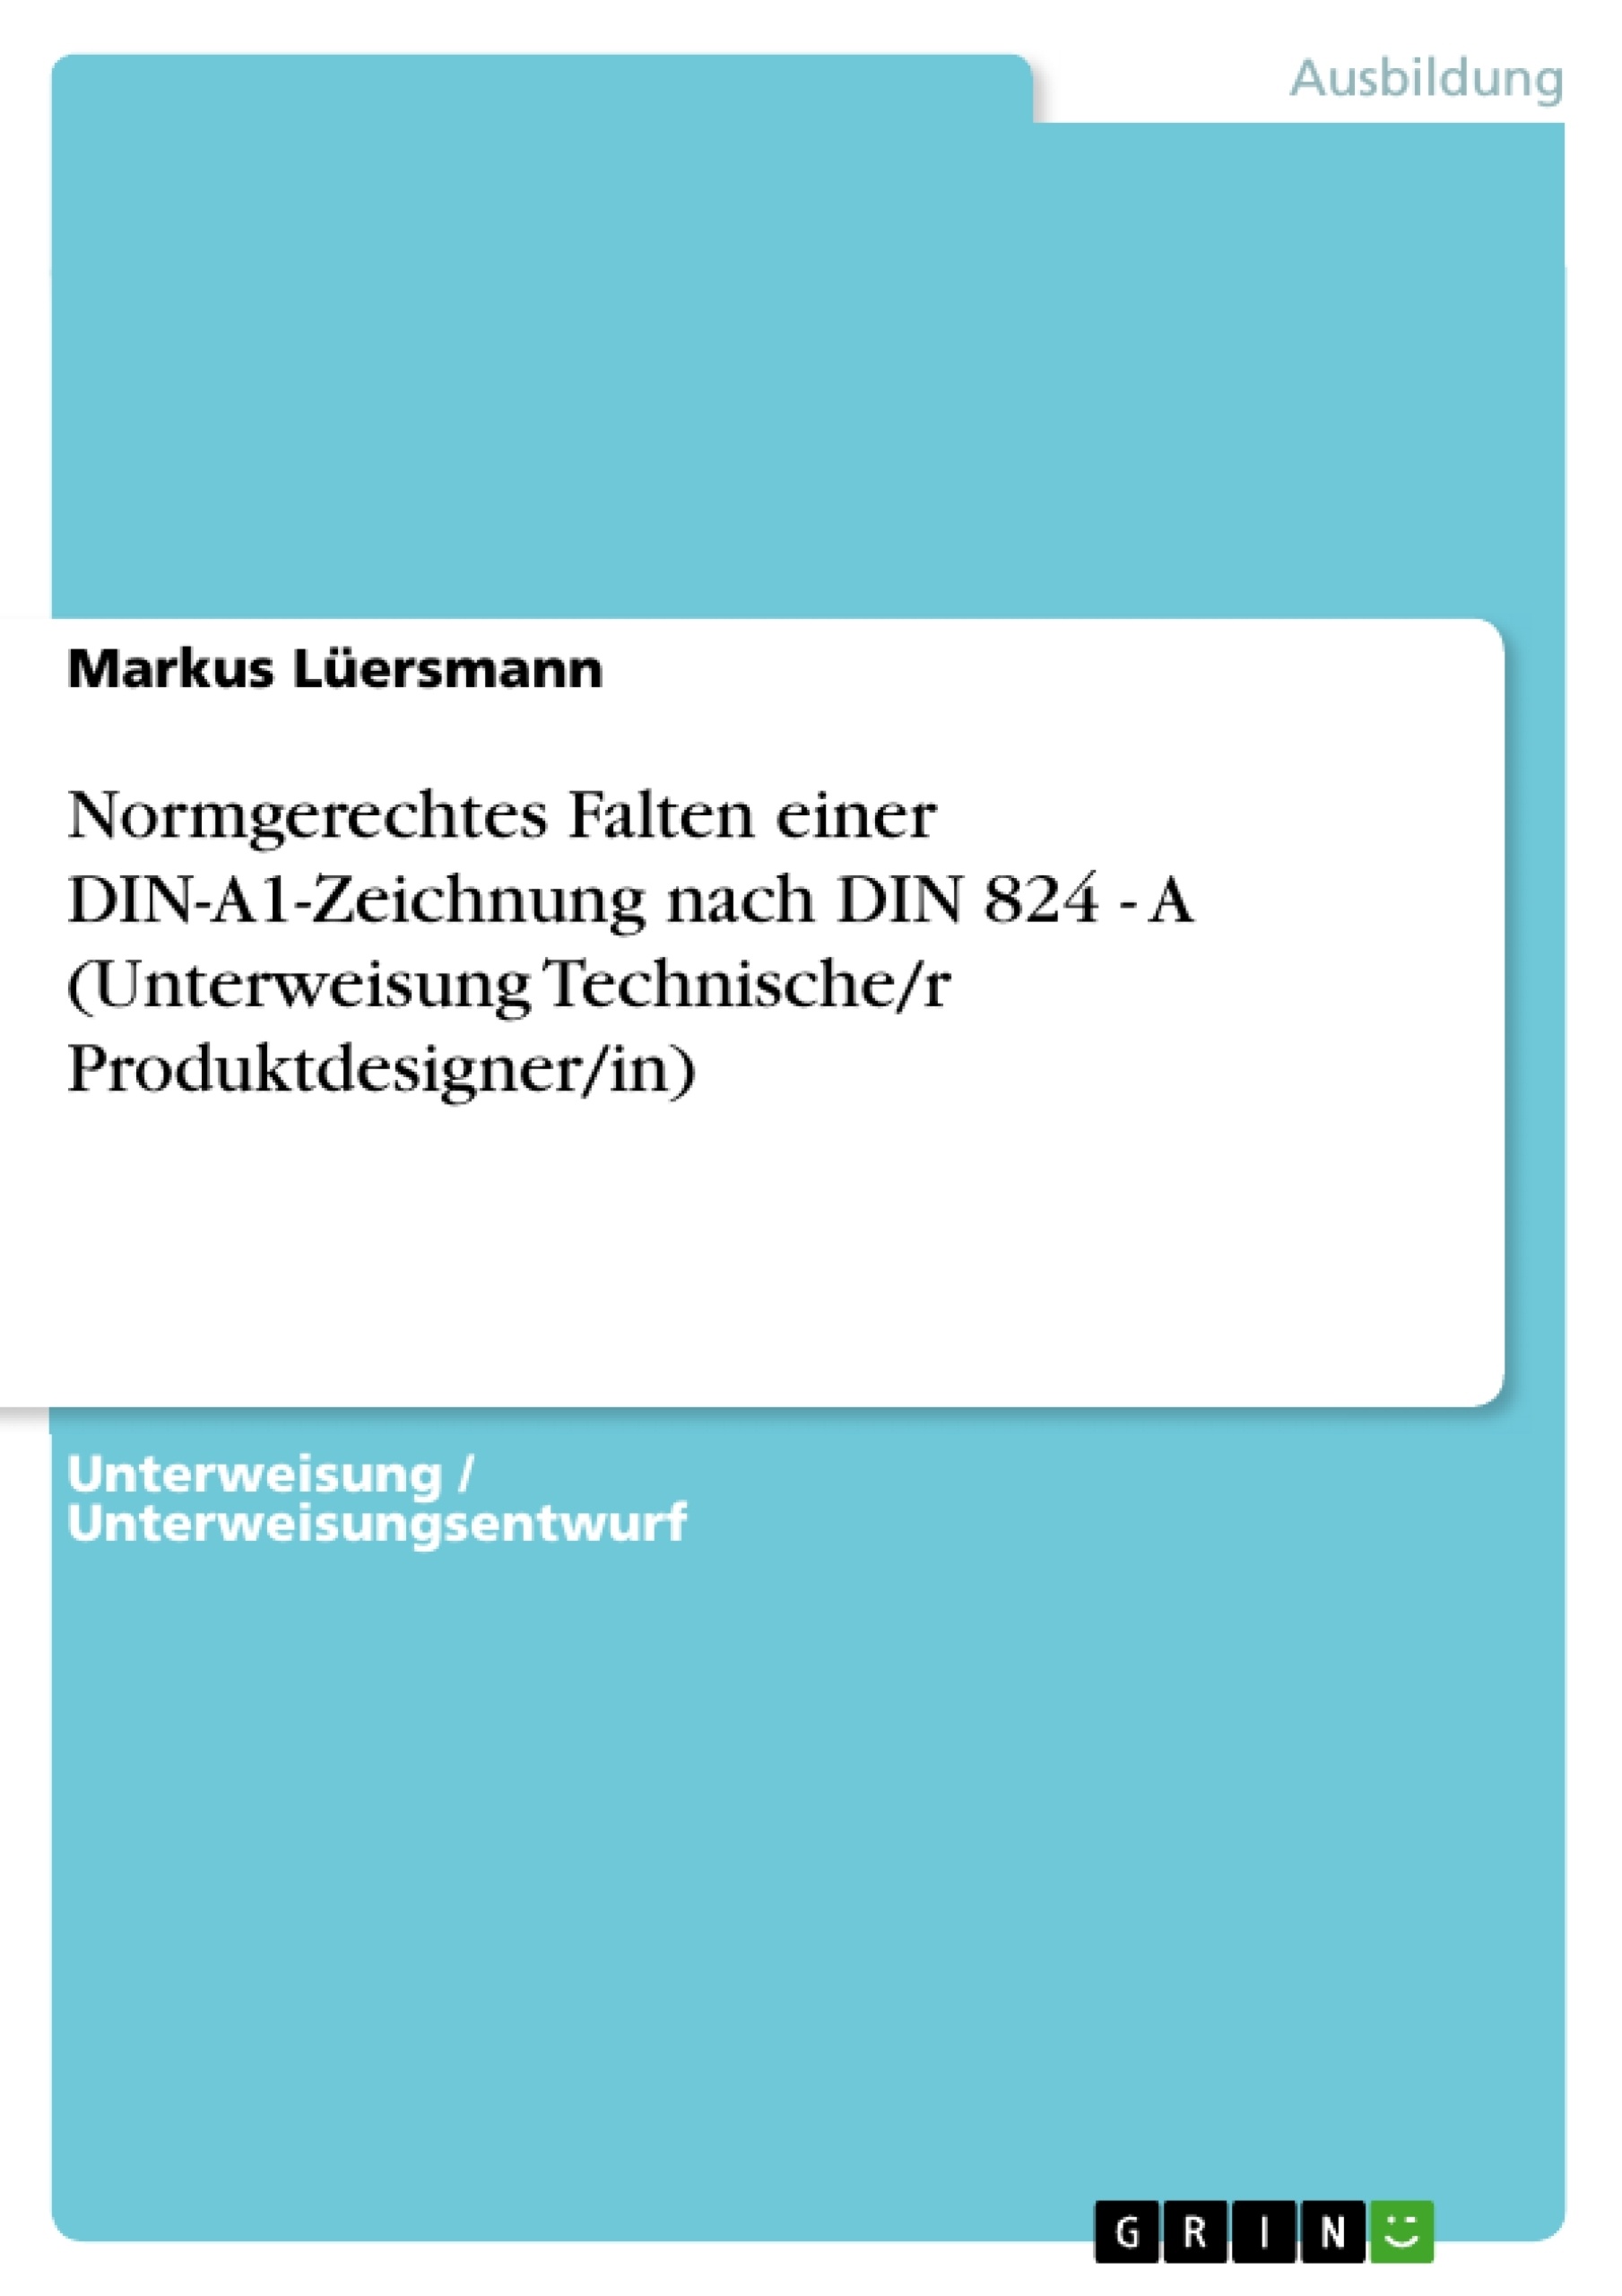 Titre: Normgerechtes Falten einer DIN-A1-Zeichnung nach DIN 824 - A (Unterweisung Technische/r Produktdesigner/in)